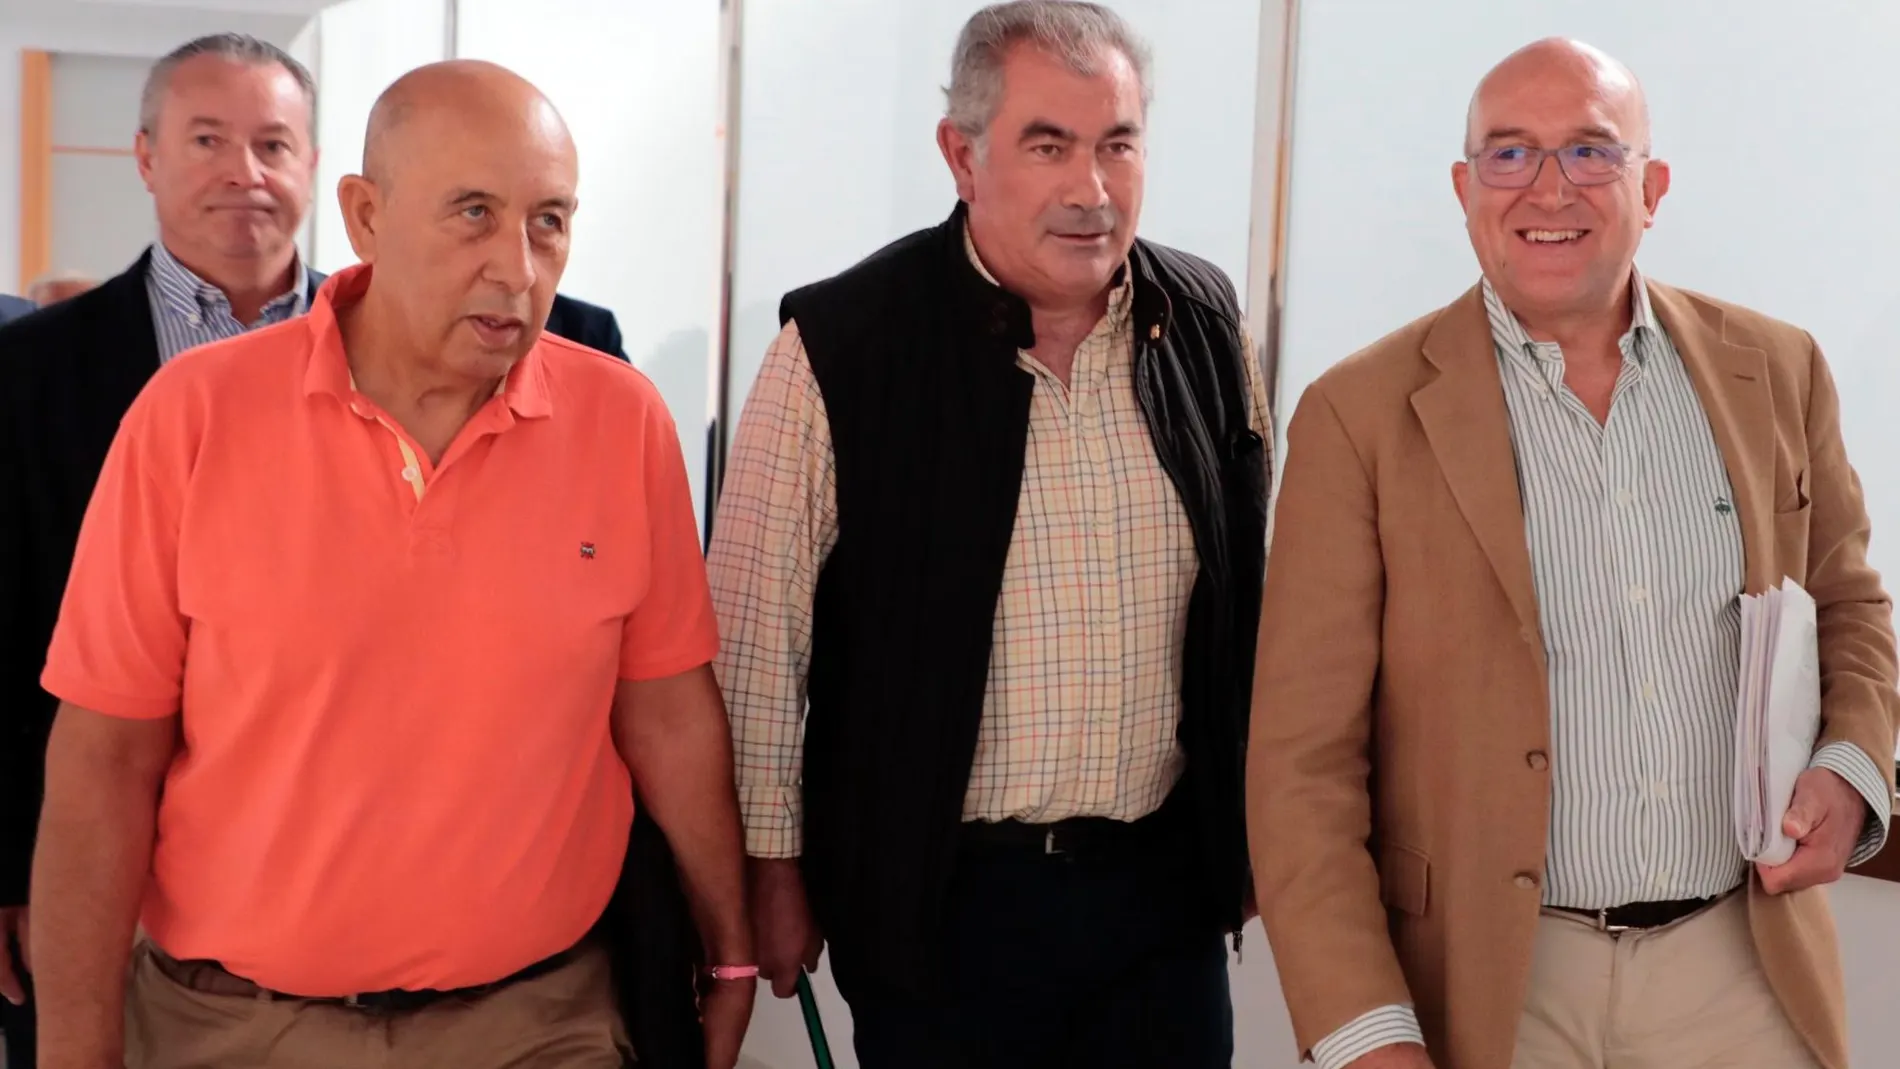 Carnero llega al Consejo Regional Agrario celebrado en Salamanca junto a Aurelio Pérez, Aurelio González y Donaciano Dujo